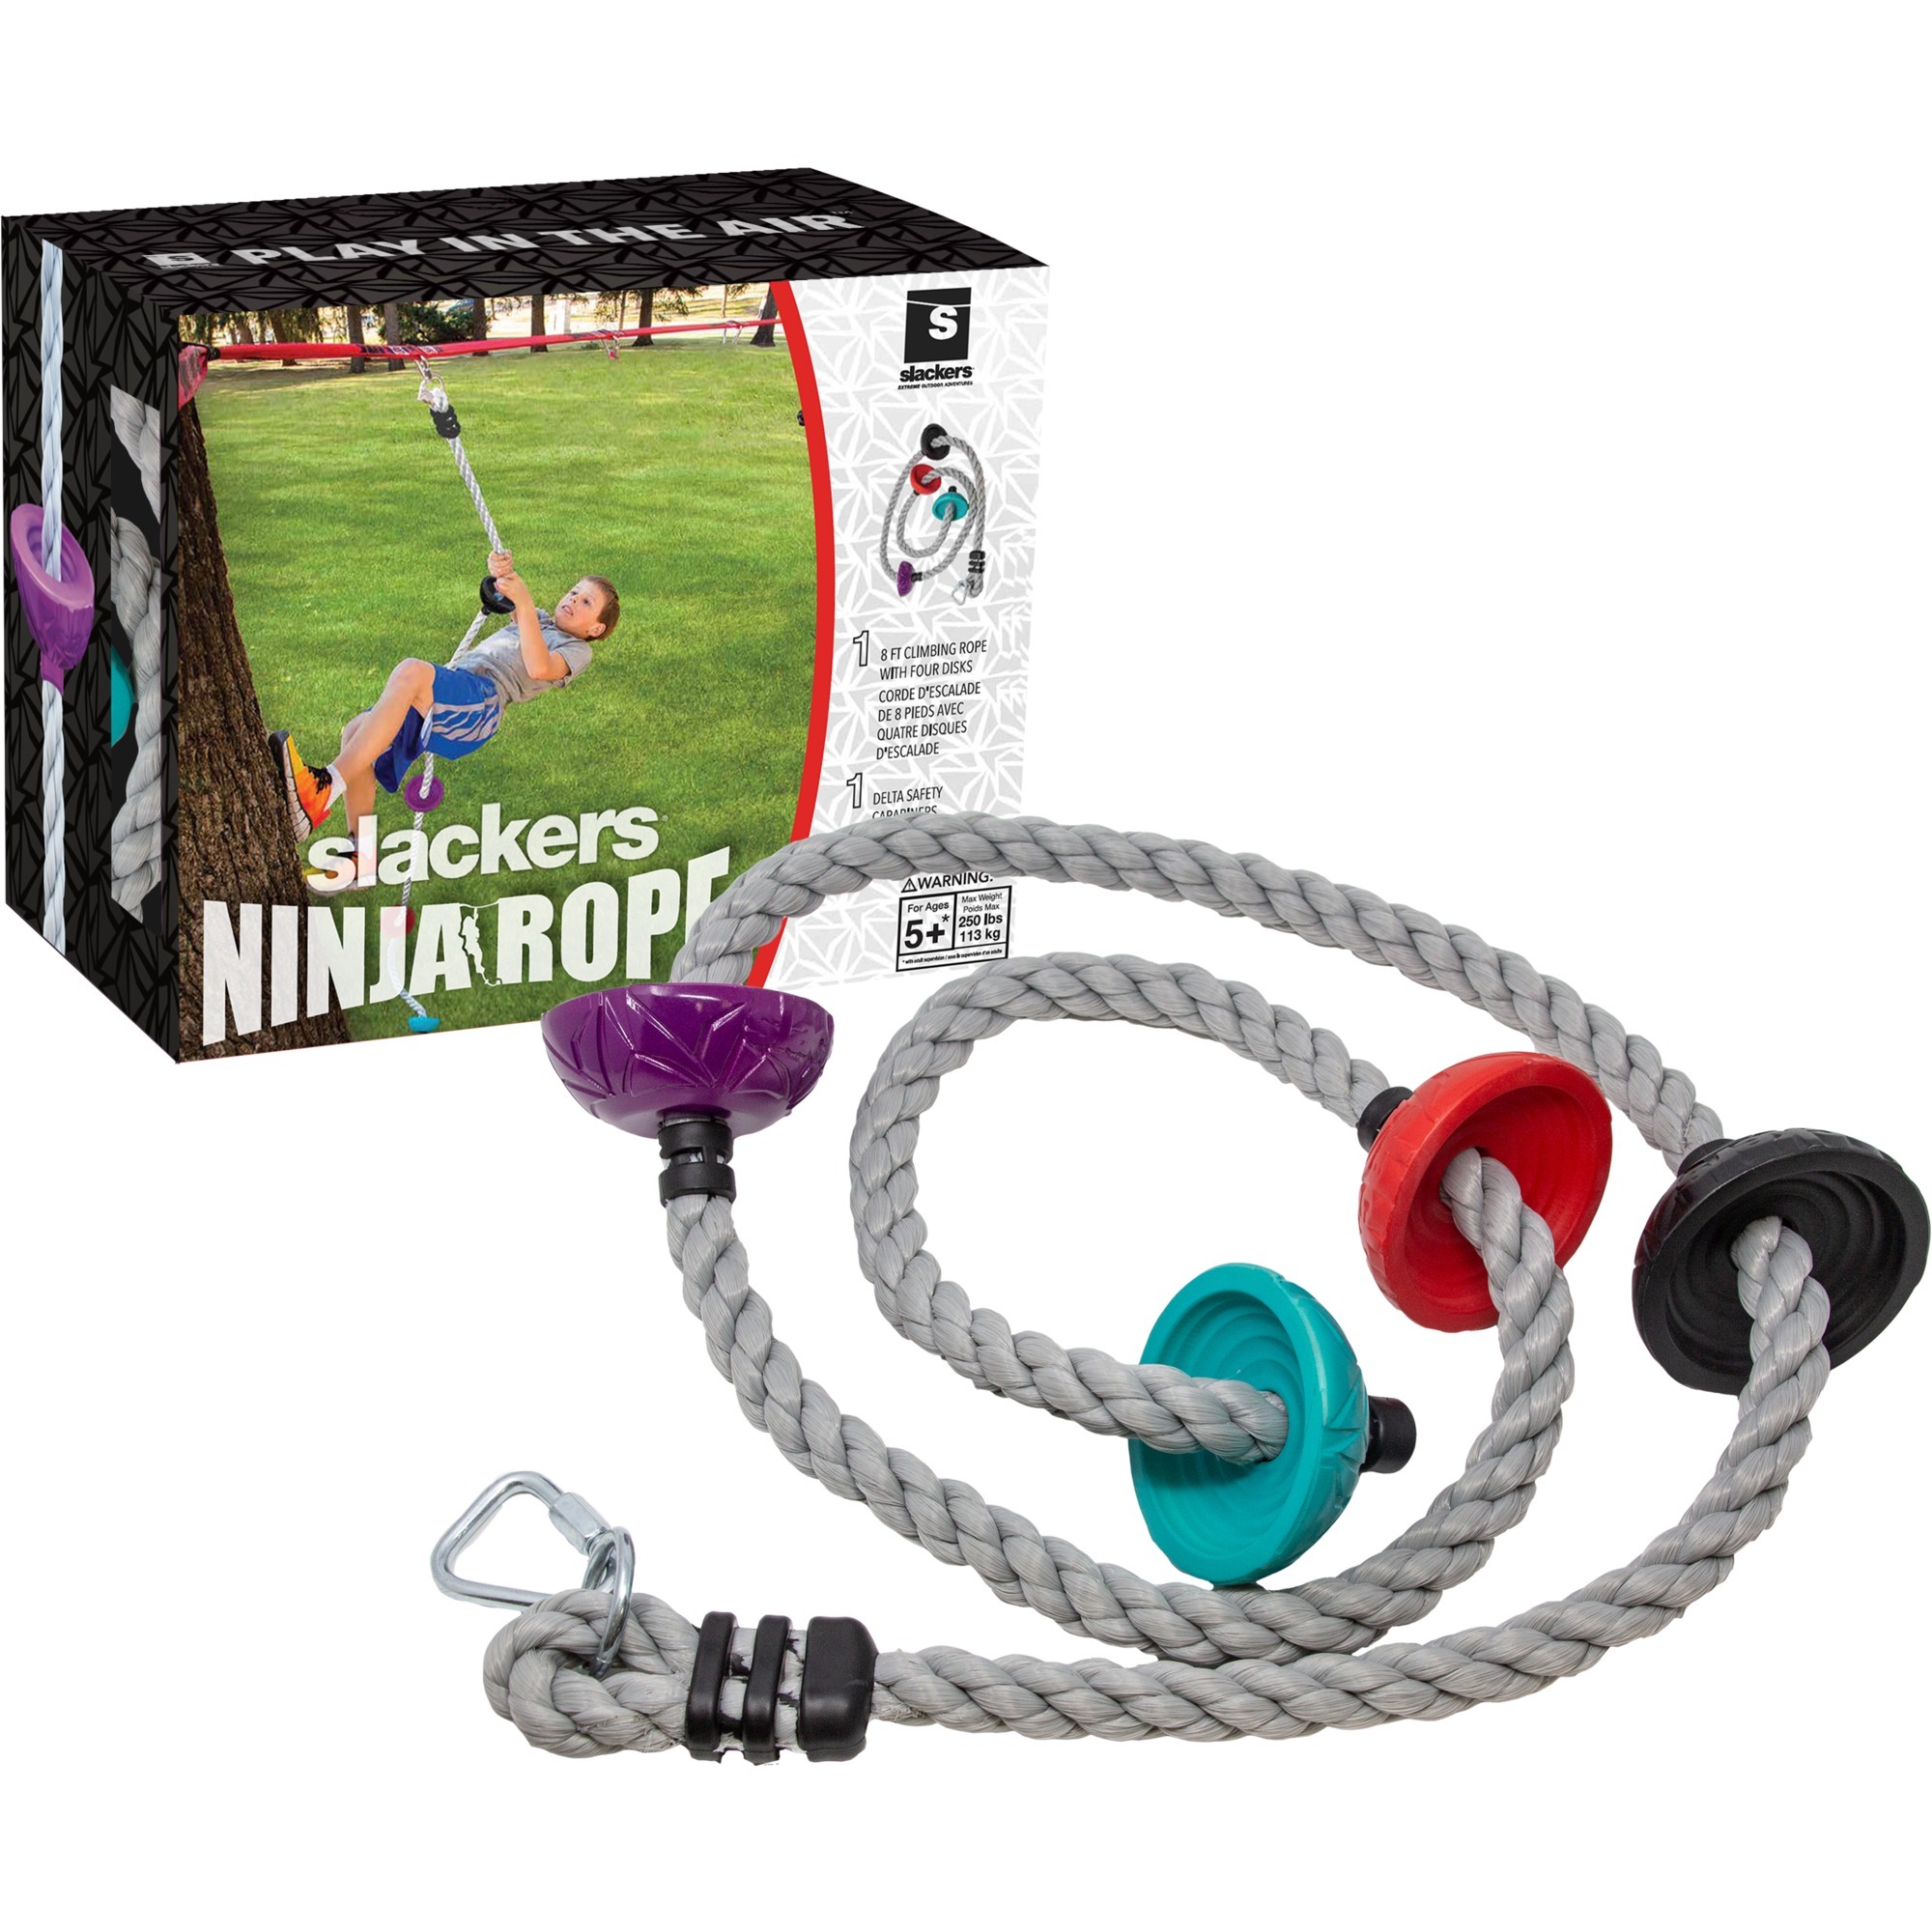 Image of Alternate - Ninja Rope Kletterseil, Gartenspielgerät online einkaufen bei Alternate